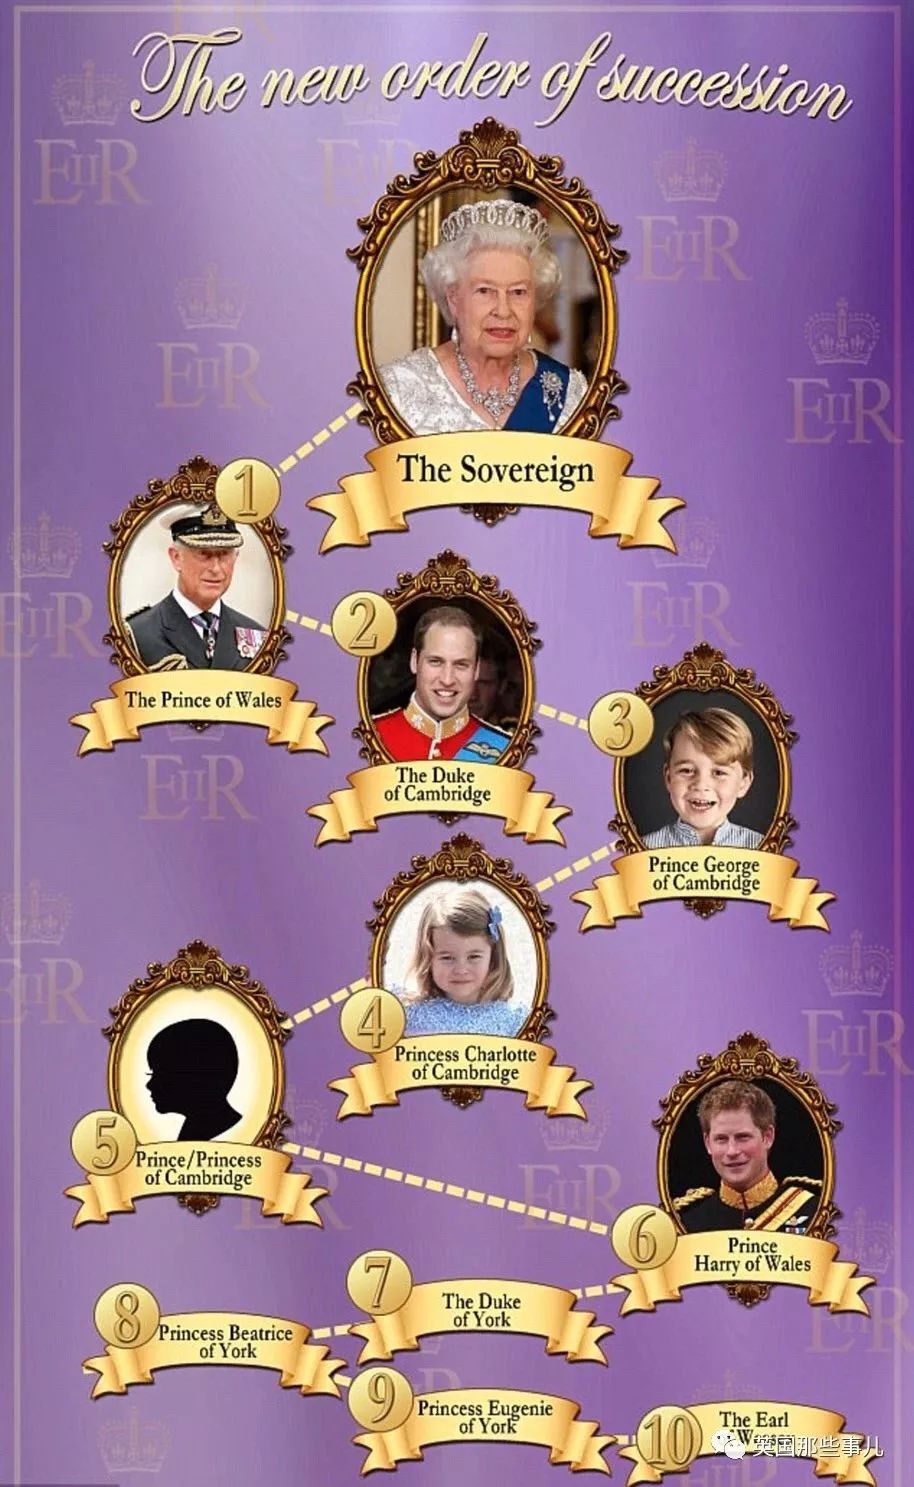 哈利王子顺位又往后?英国王室新迎第五顺位继